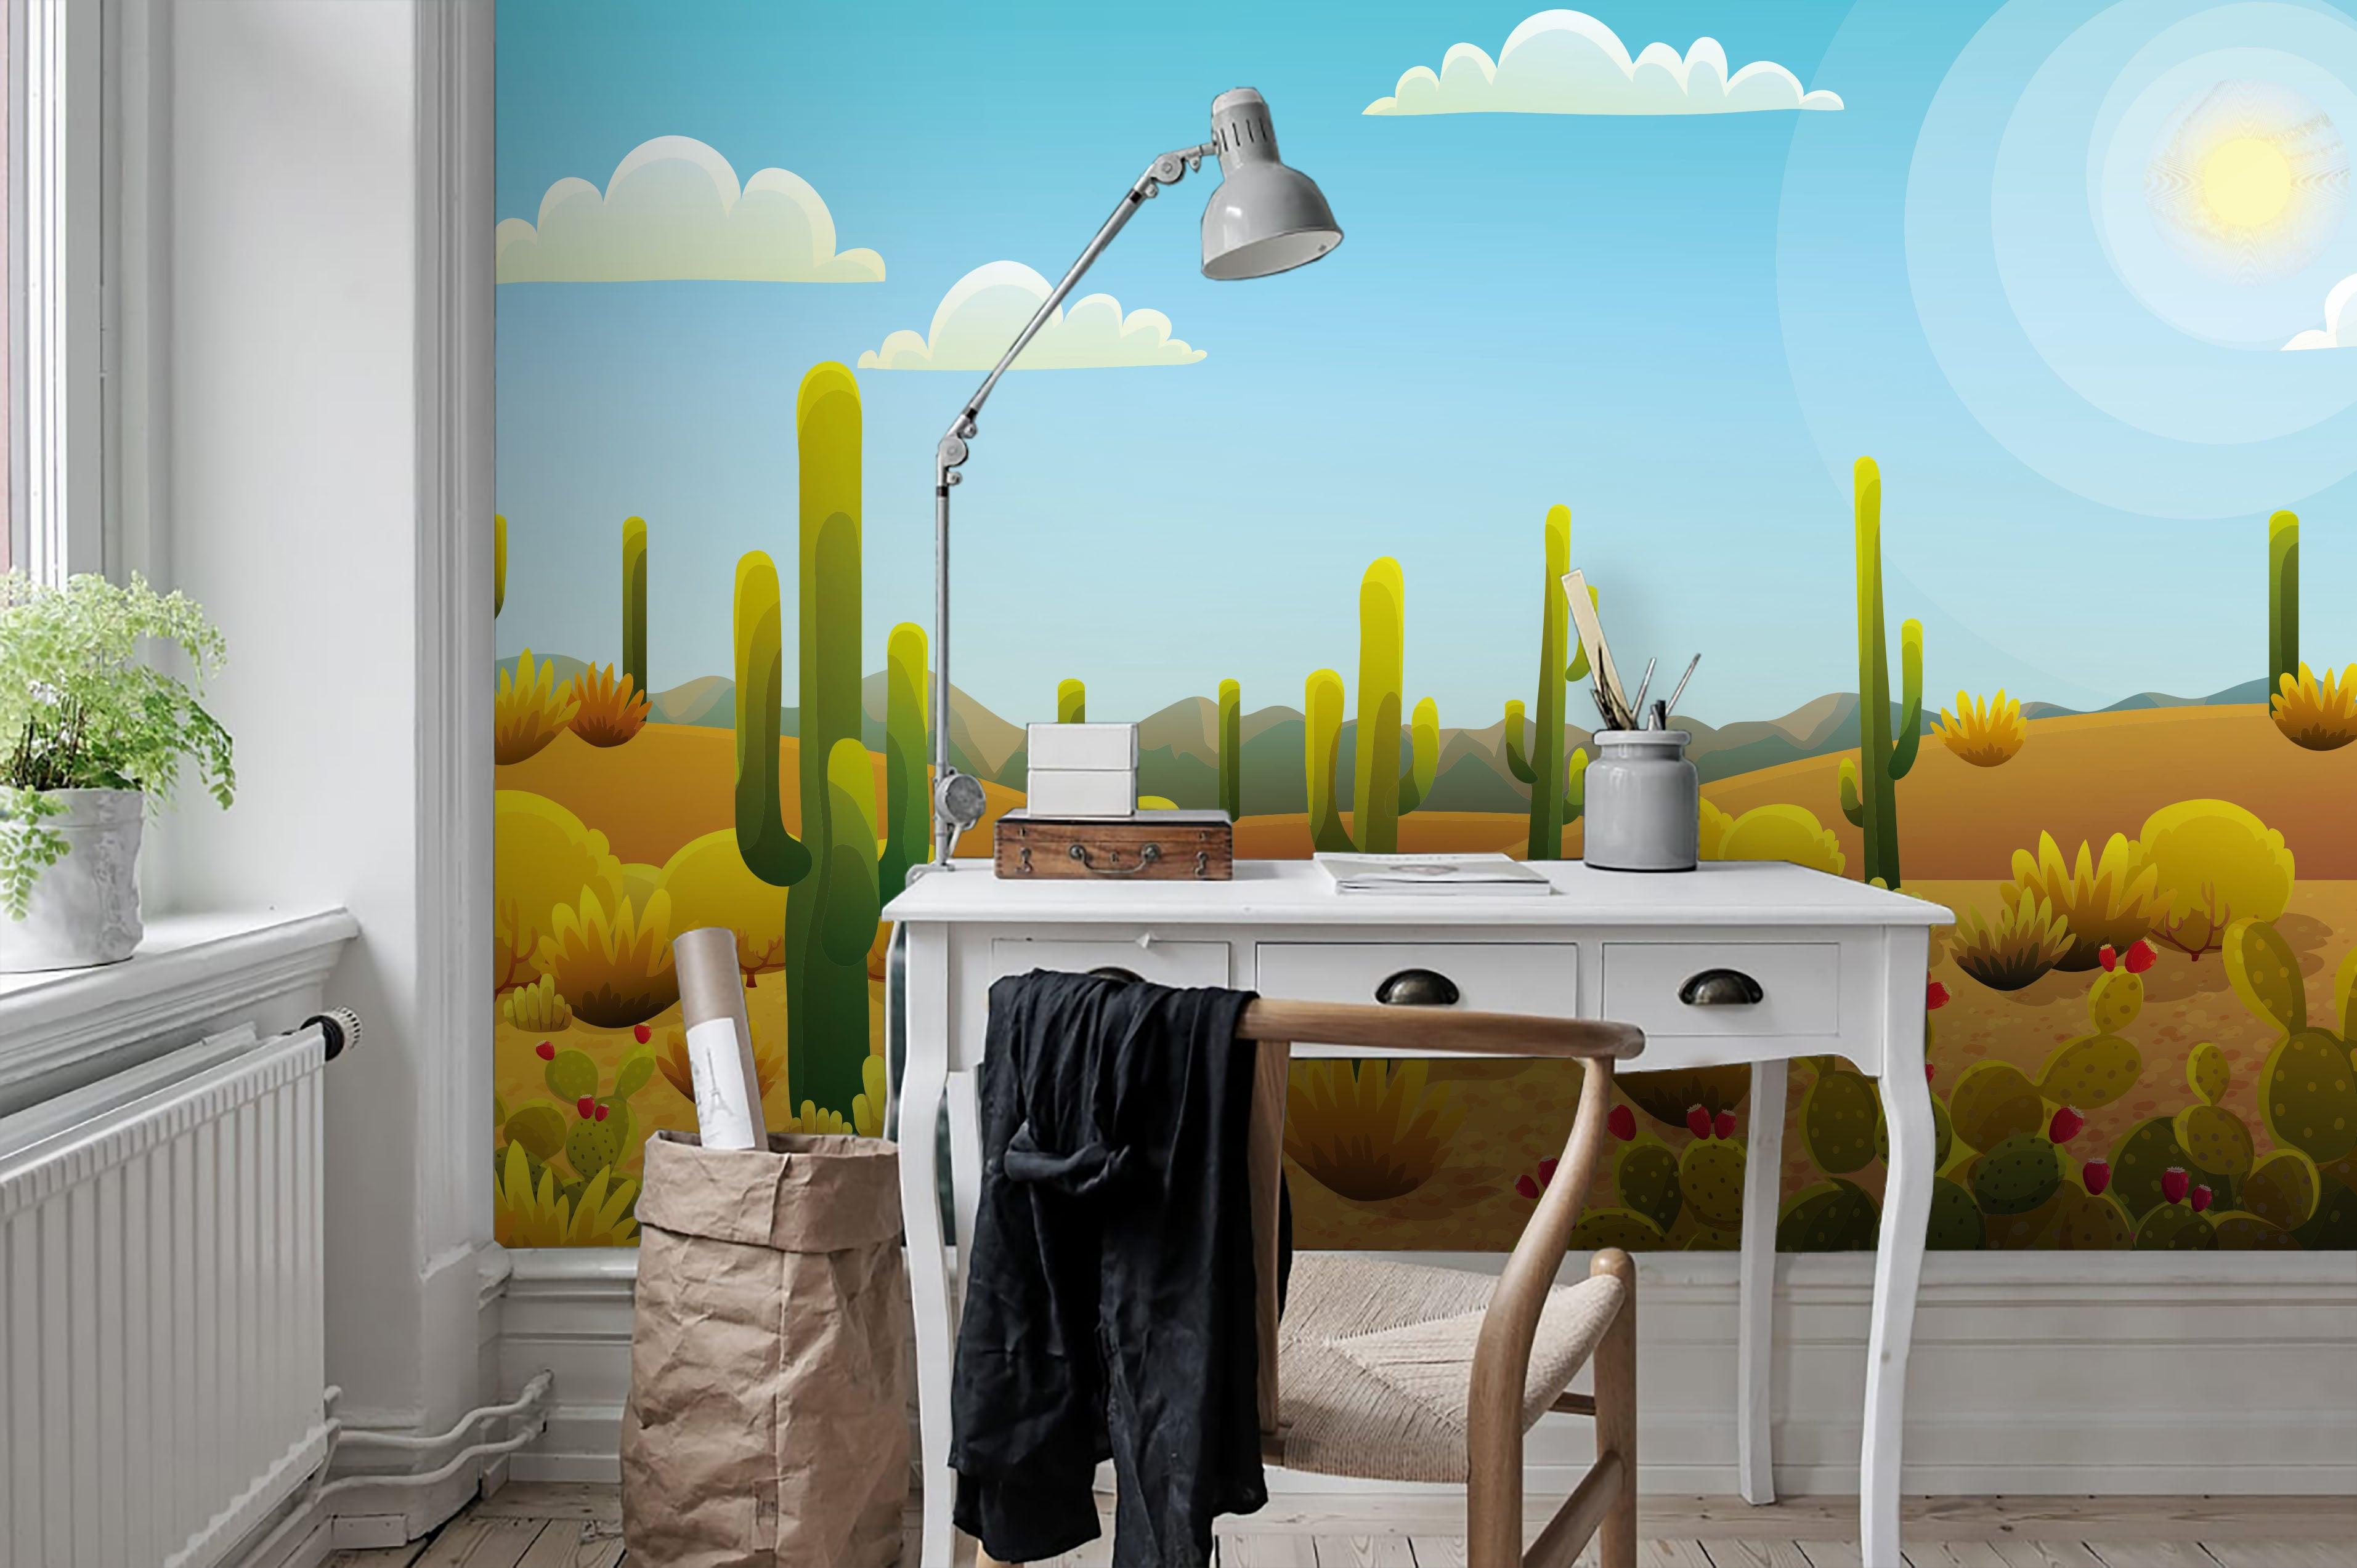 3D Cartoon Desert Cactus Wall Mural Wallpaper 85- Jess Art Decoration